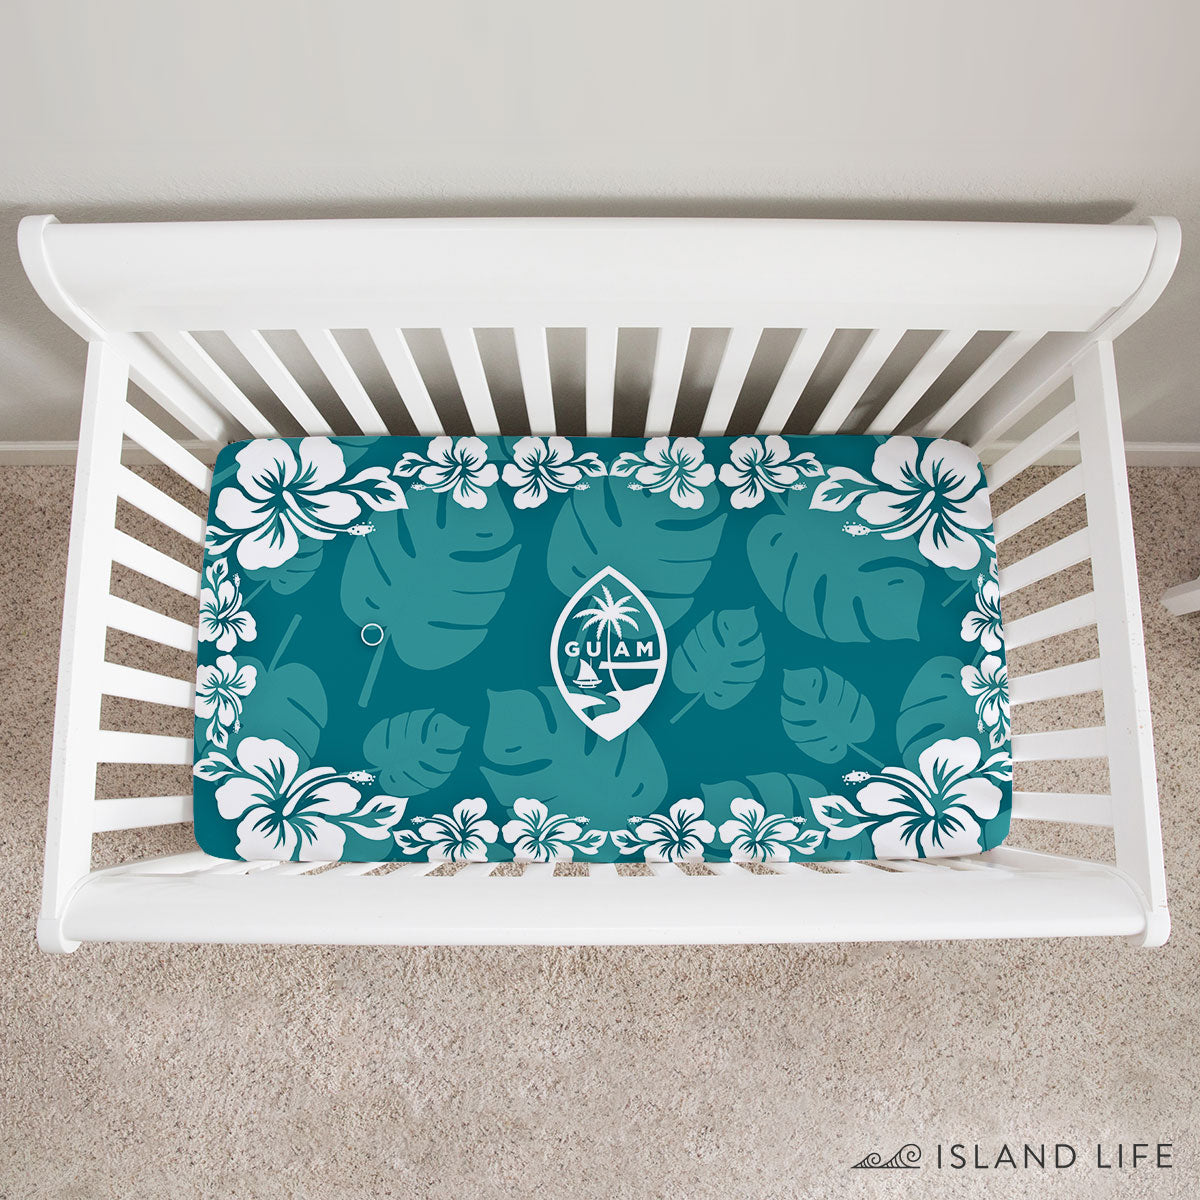 Guam Seal Teal Hibiscus Baby Crib Sheet